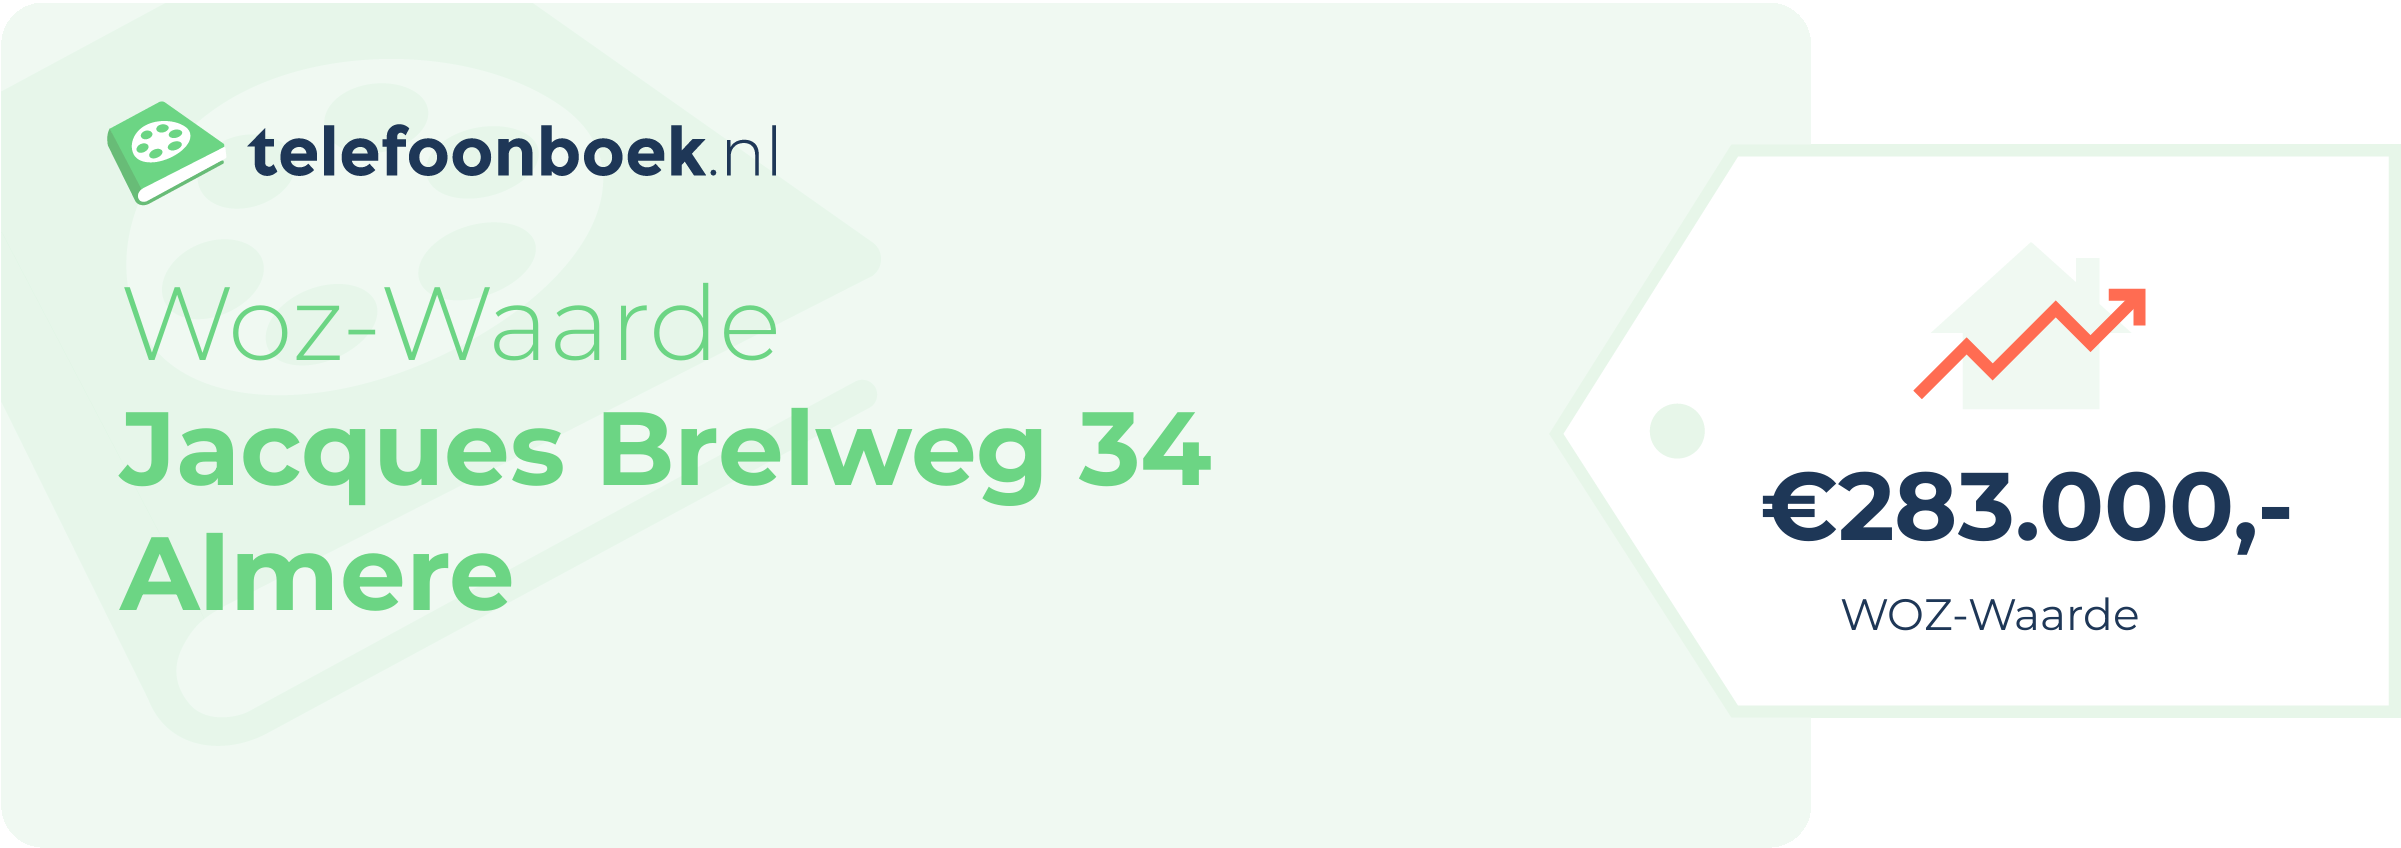 WOZ-waarde Jacques Brelweg 34 Almere